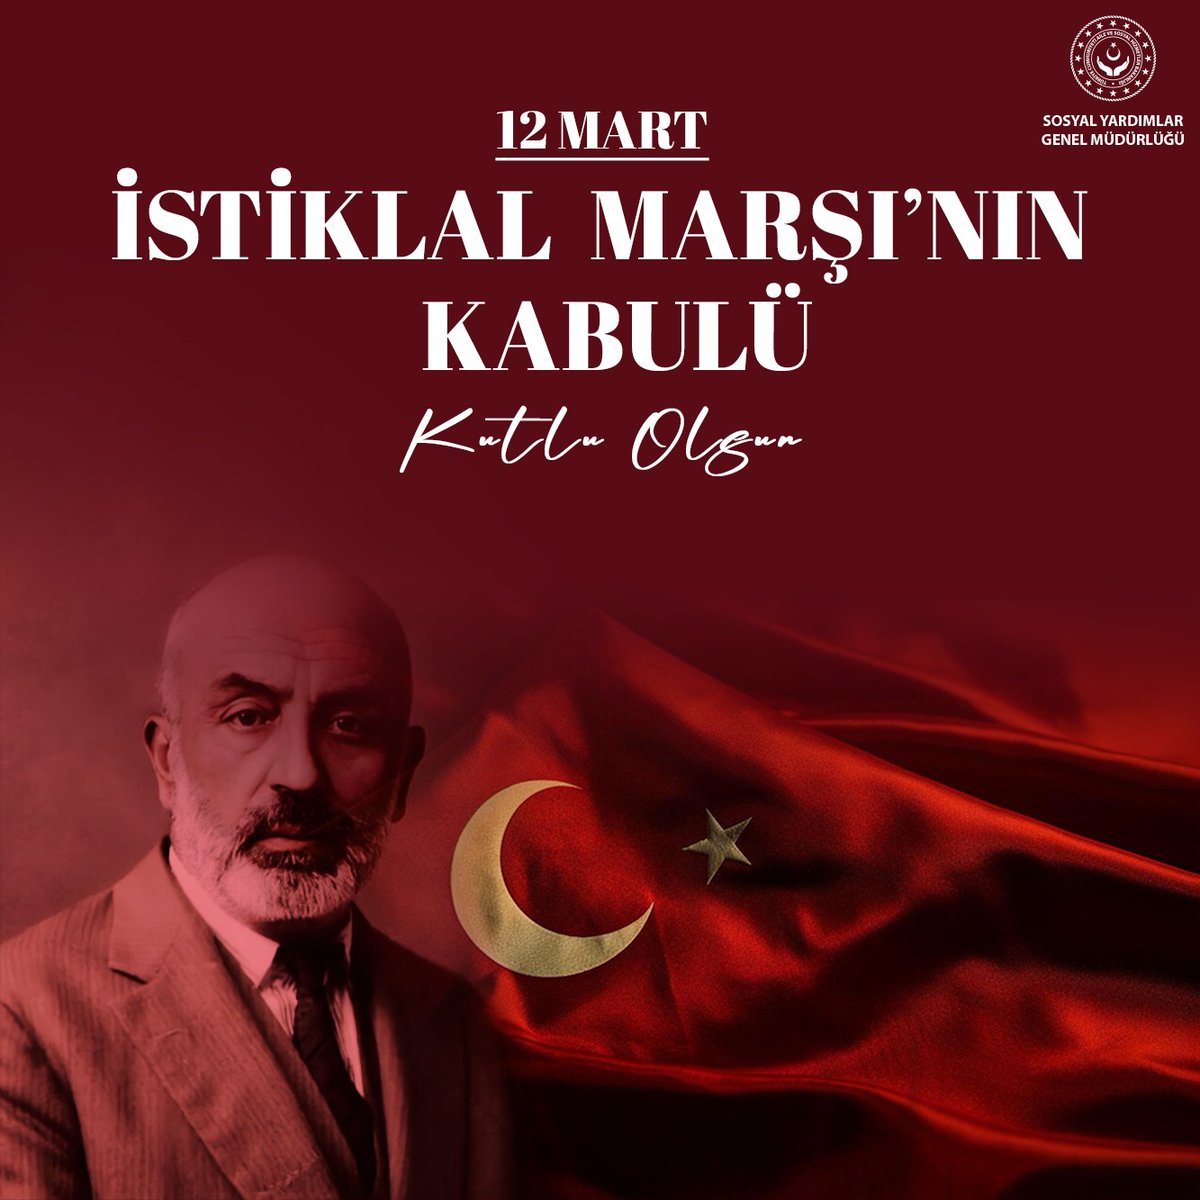 İstiklal Marşı'mızın kabulünün 103. yılı kutlu olsun. Milli Şairimiz Merhum Mehmet Akif Ersoy ile vatan mücadelesinde şehadete yürüyen tüm kahramanlarımızı saygıyla, rahmetle, şükranla anıyoruz.